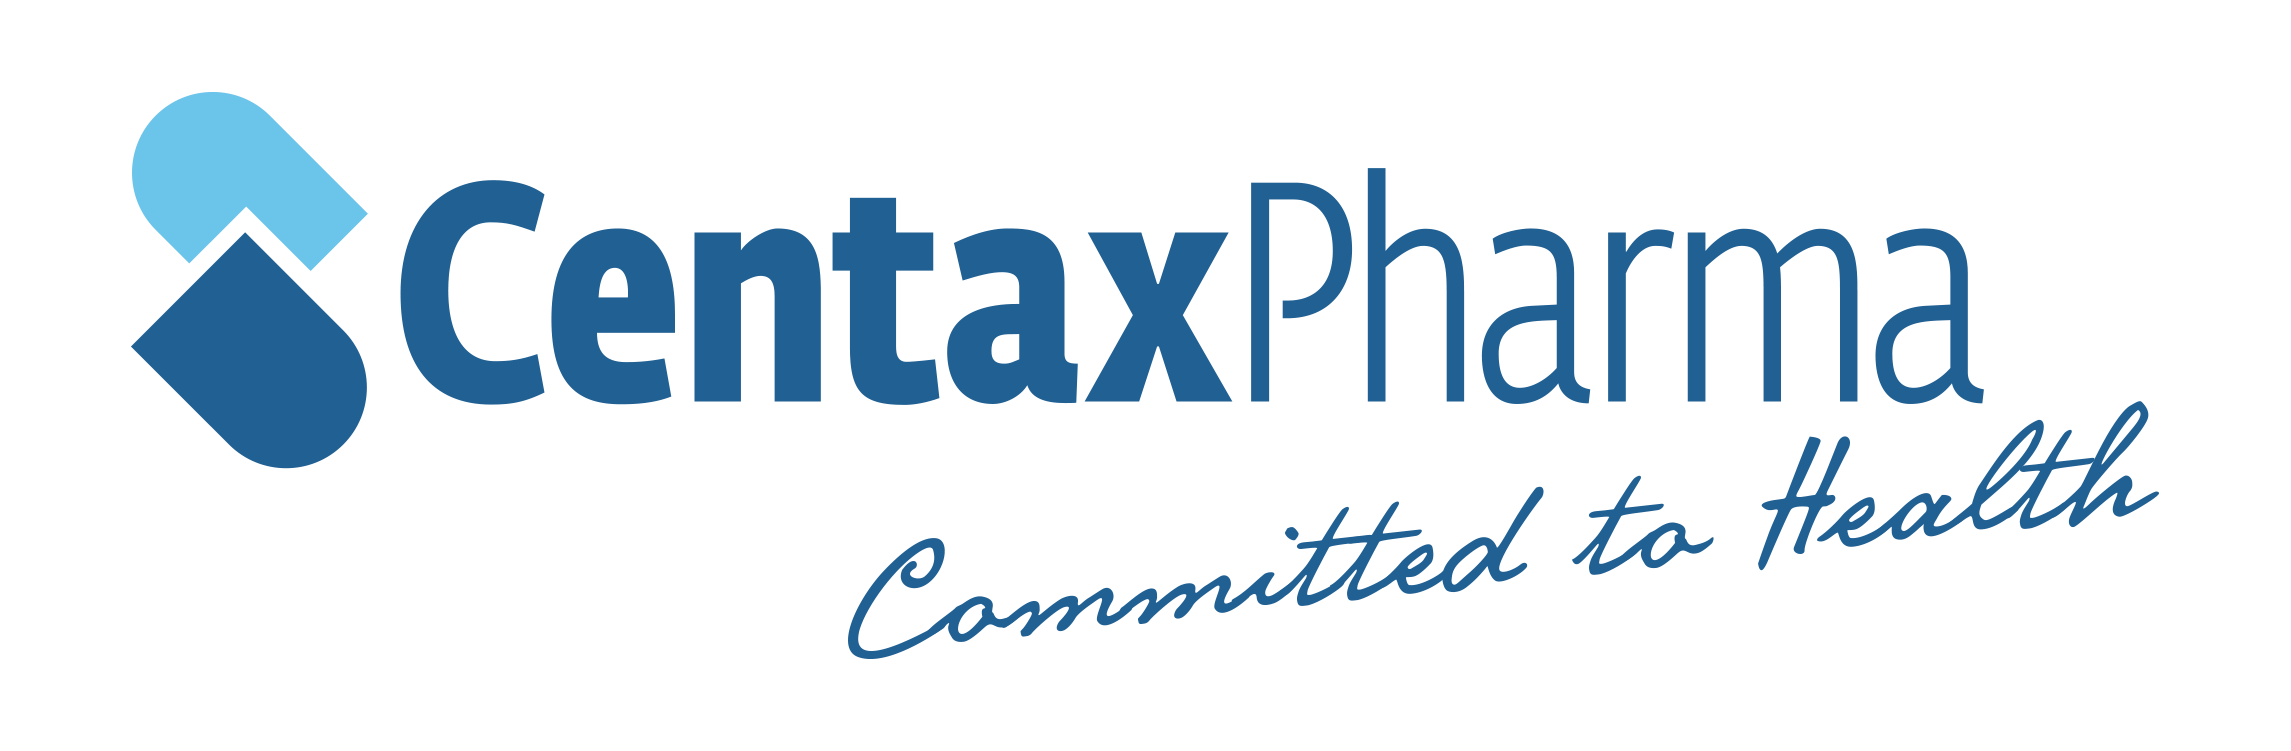 Centax Pharma GmbH